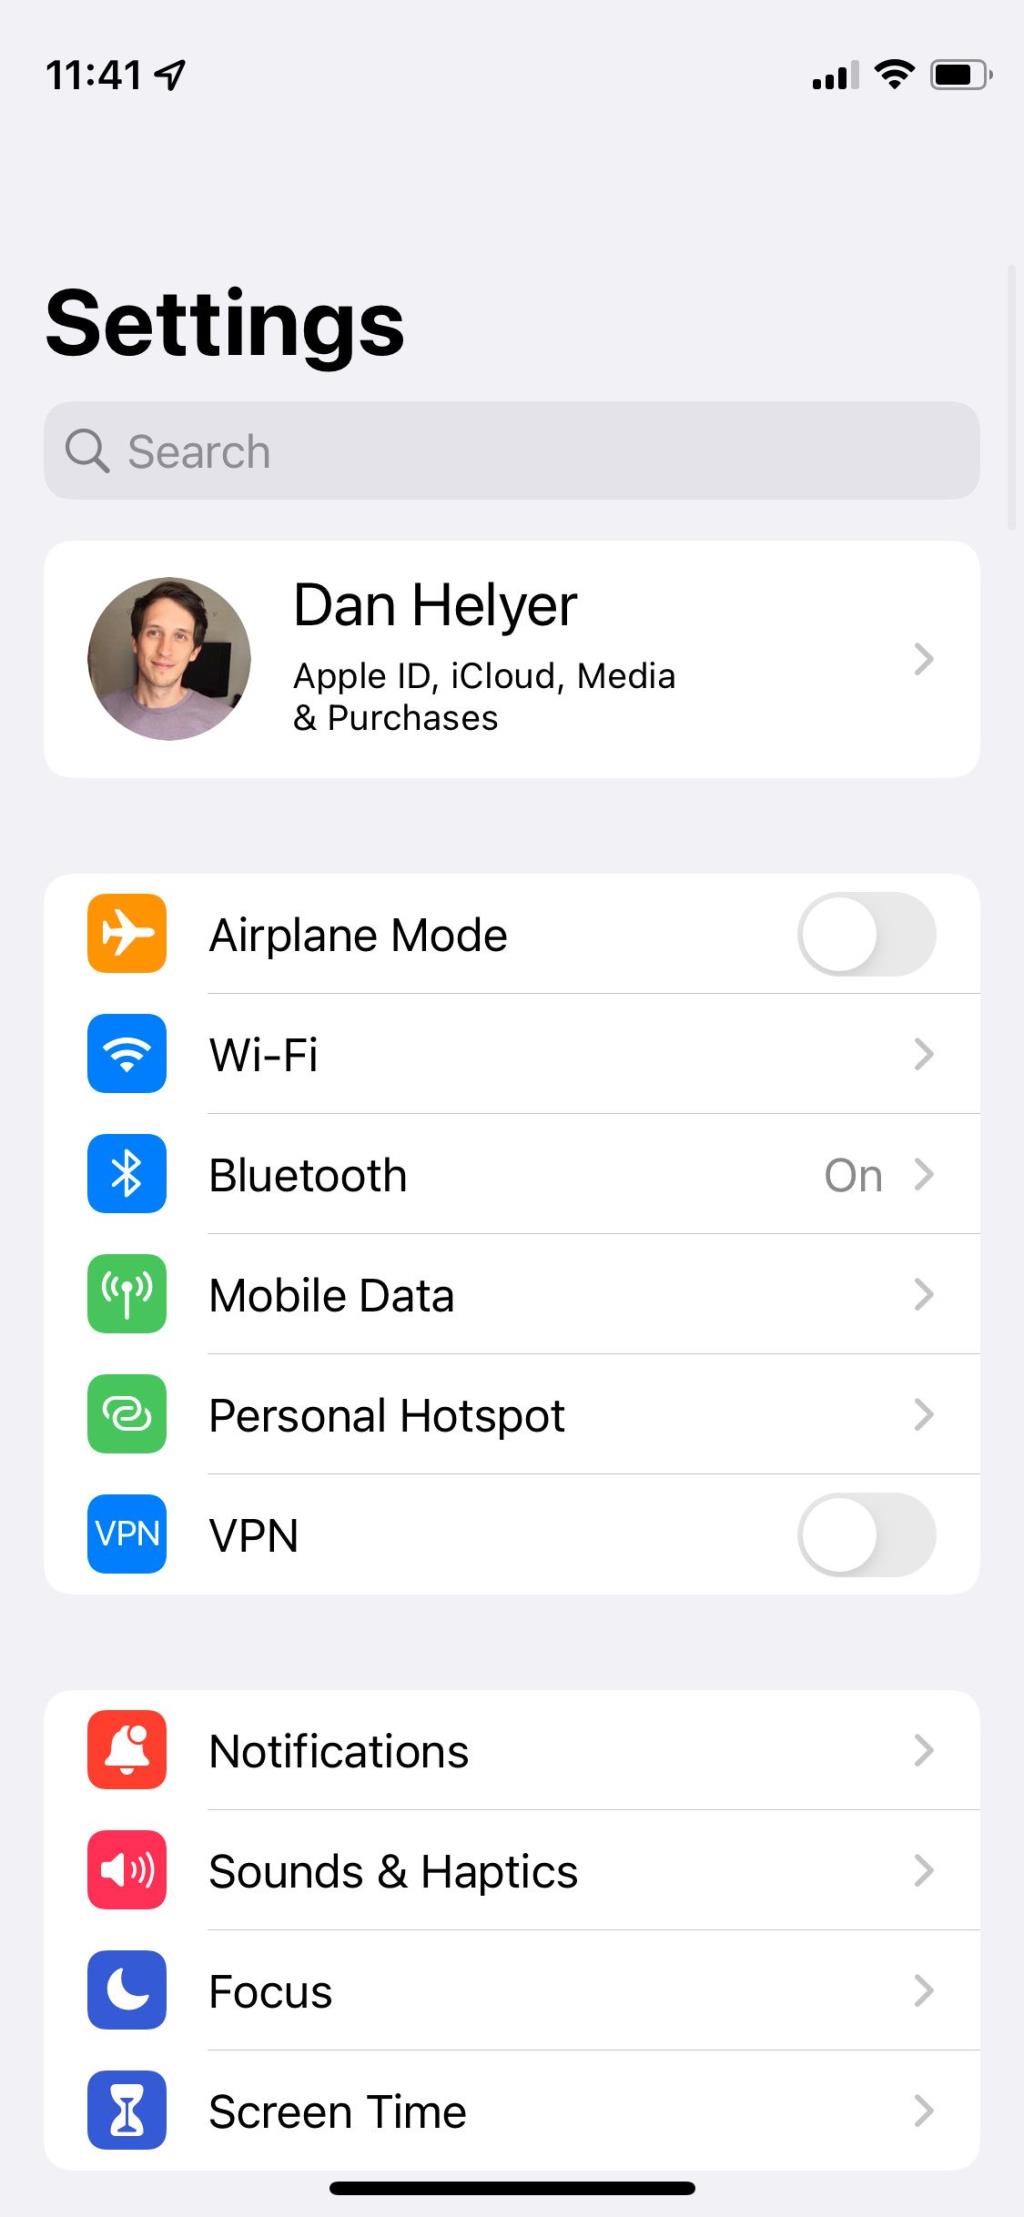 Apple Home Hub beállítása, hogy intelligens otthonát okosabbá tegye